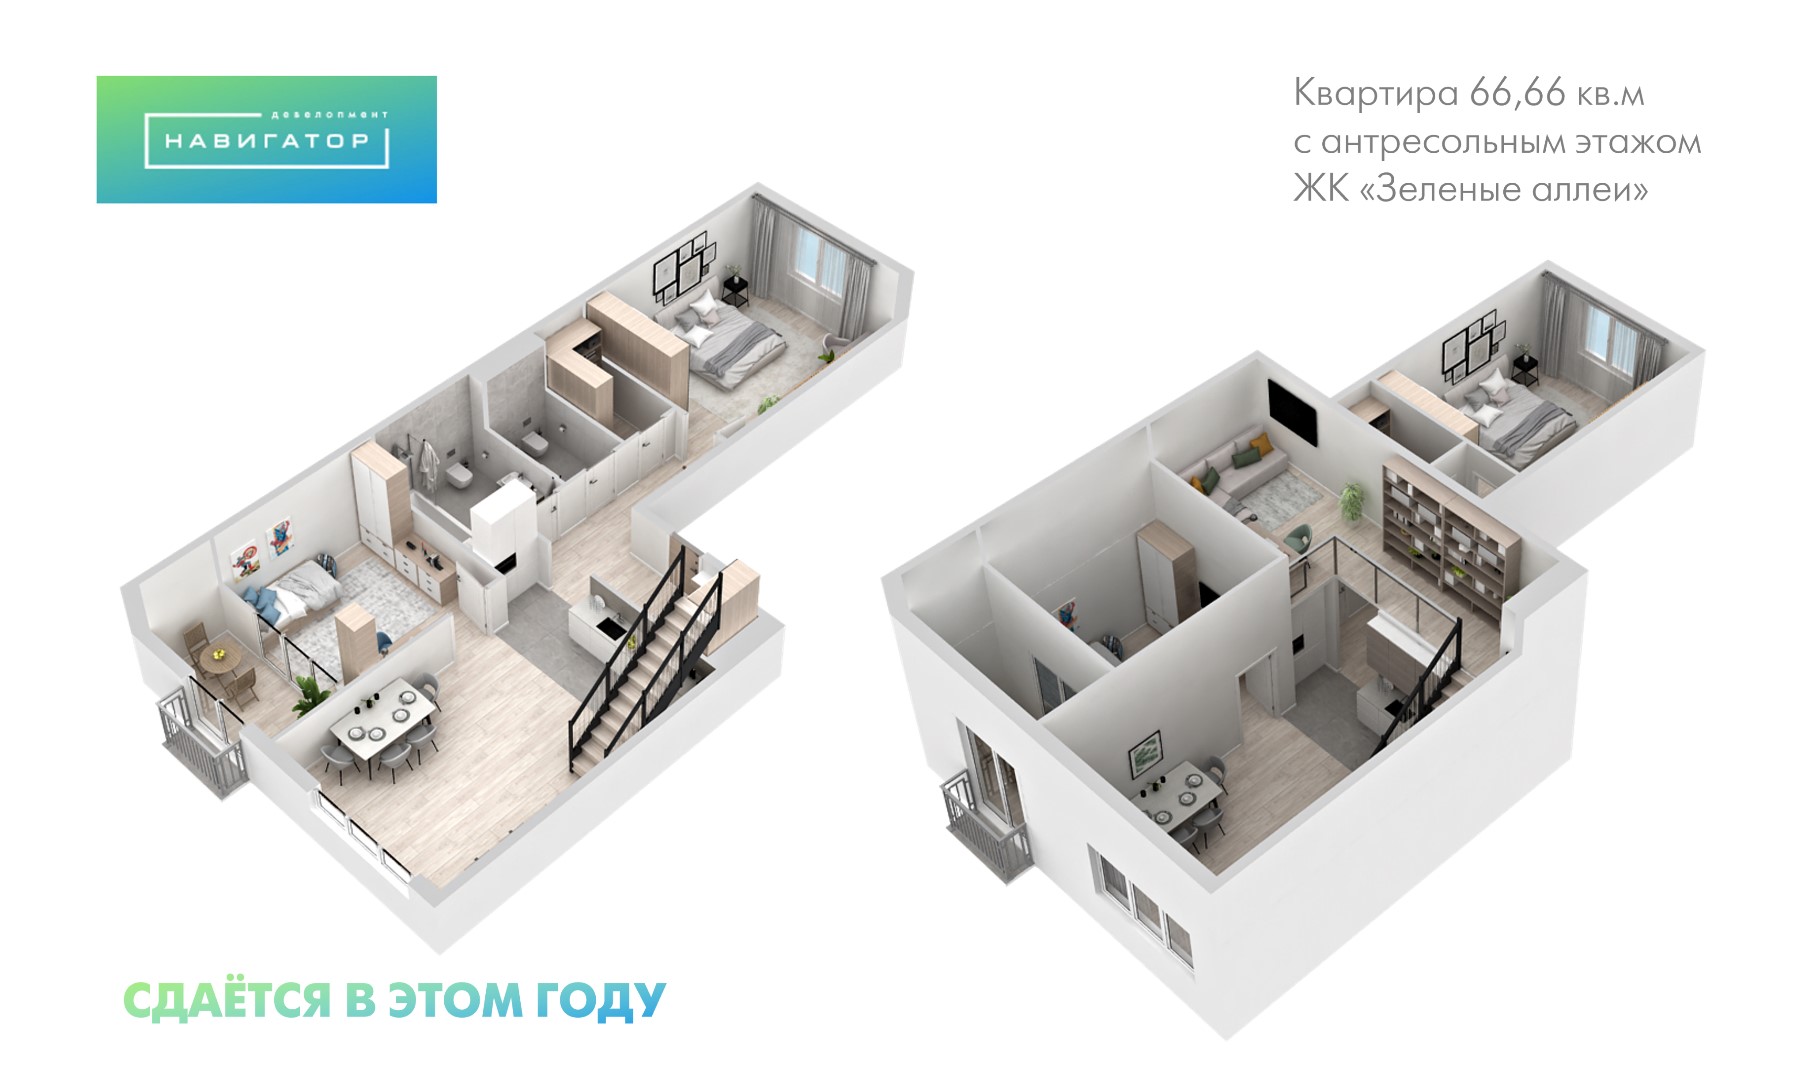 Квартиры с антресольными этажами: новый формат жилья в ЖК «Зеленые аллеи»